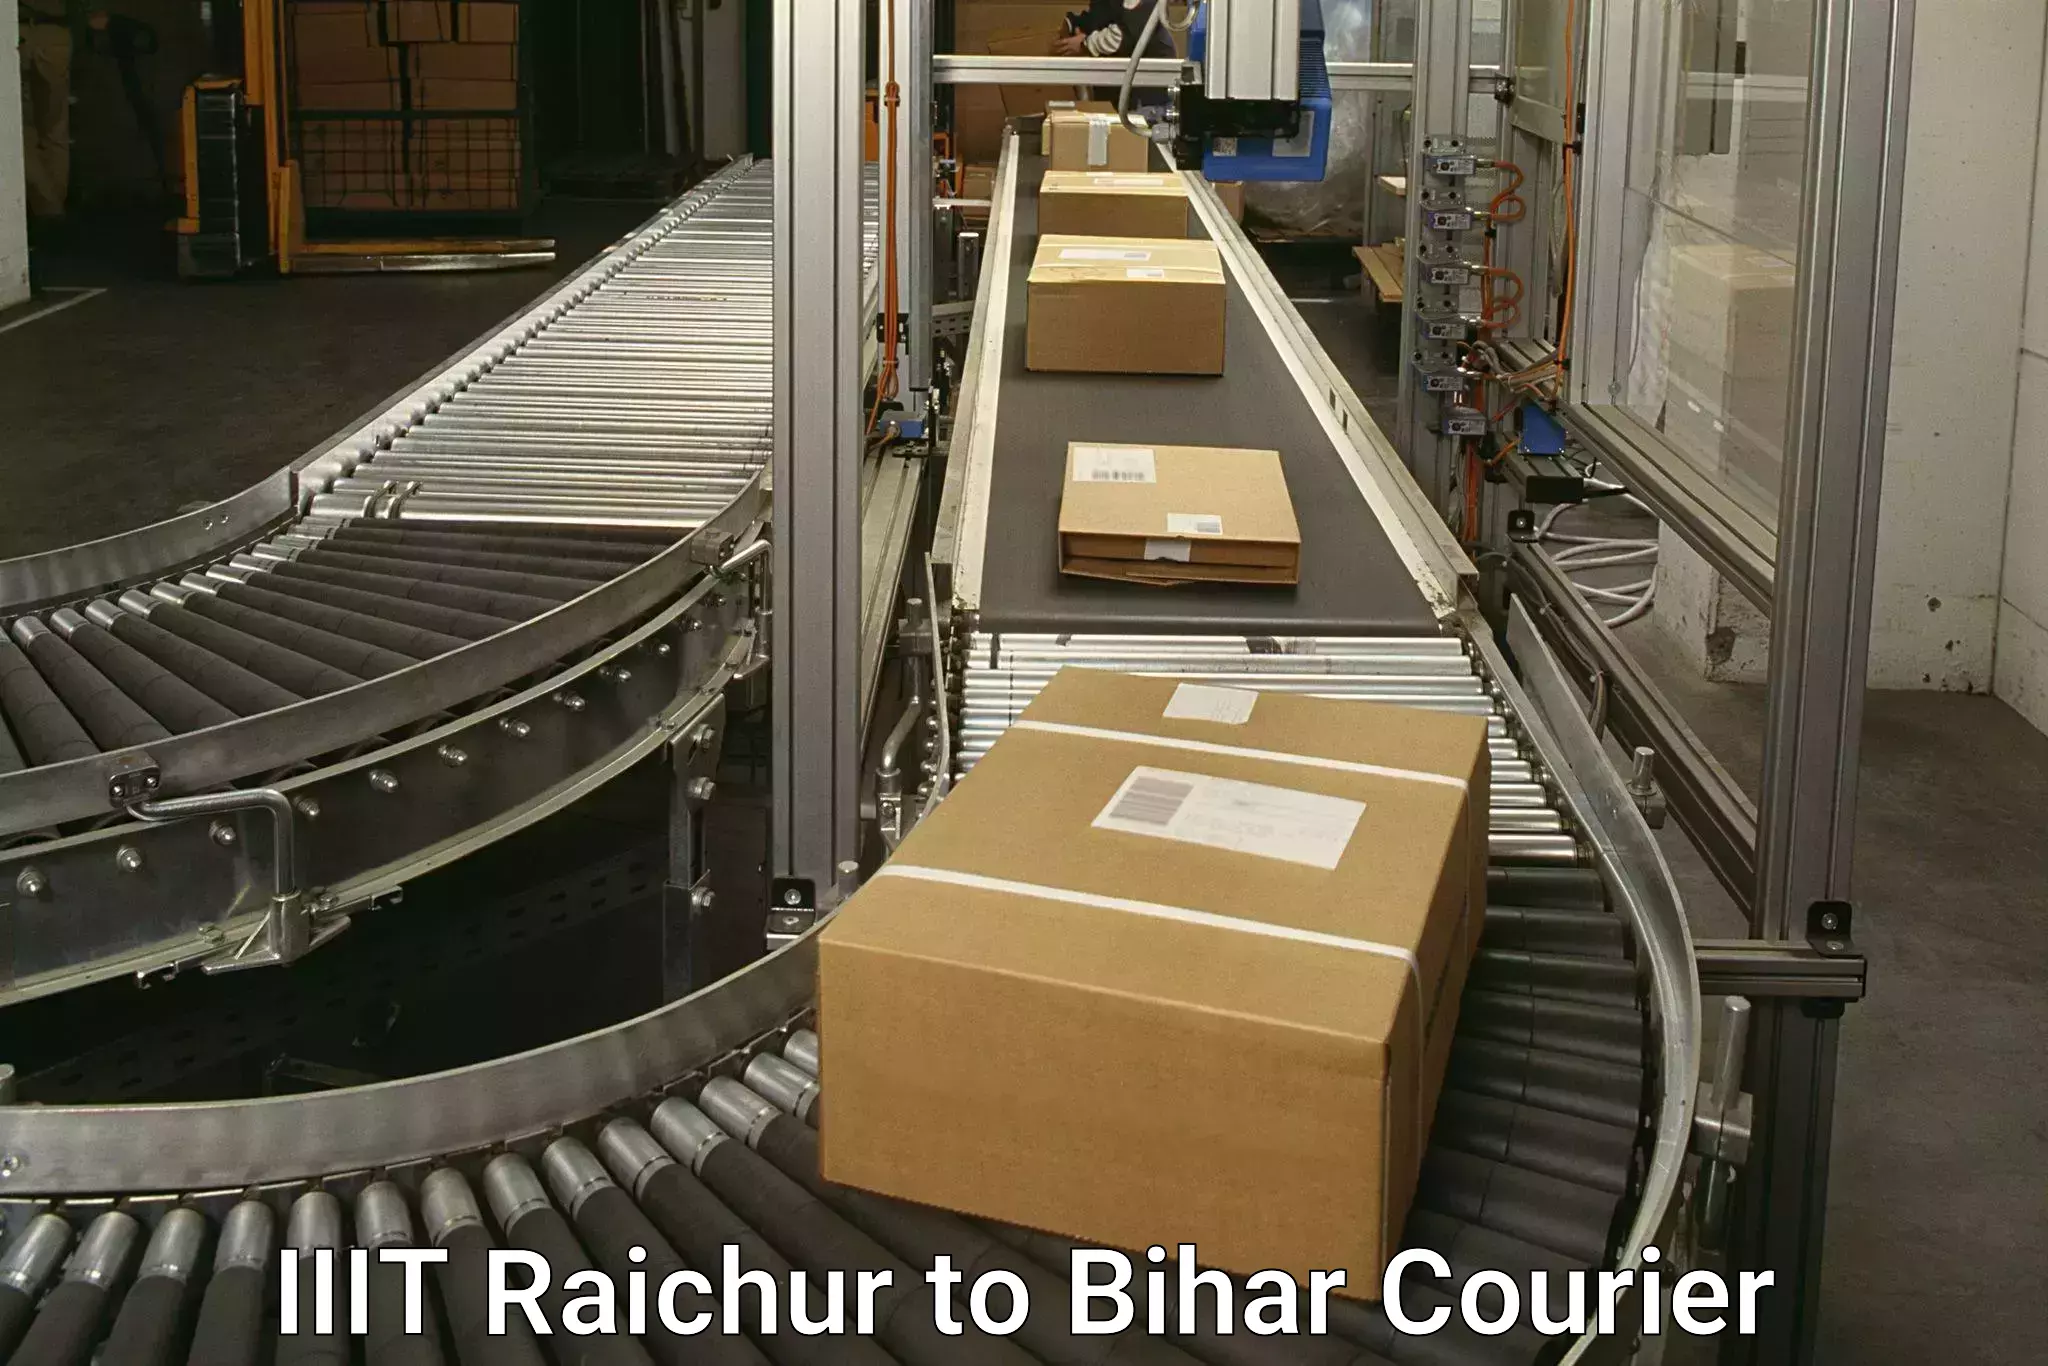 Express package handling IIIT Raichur to Bikramganj